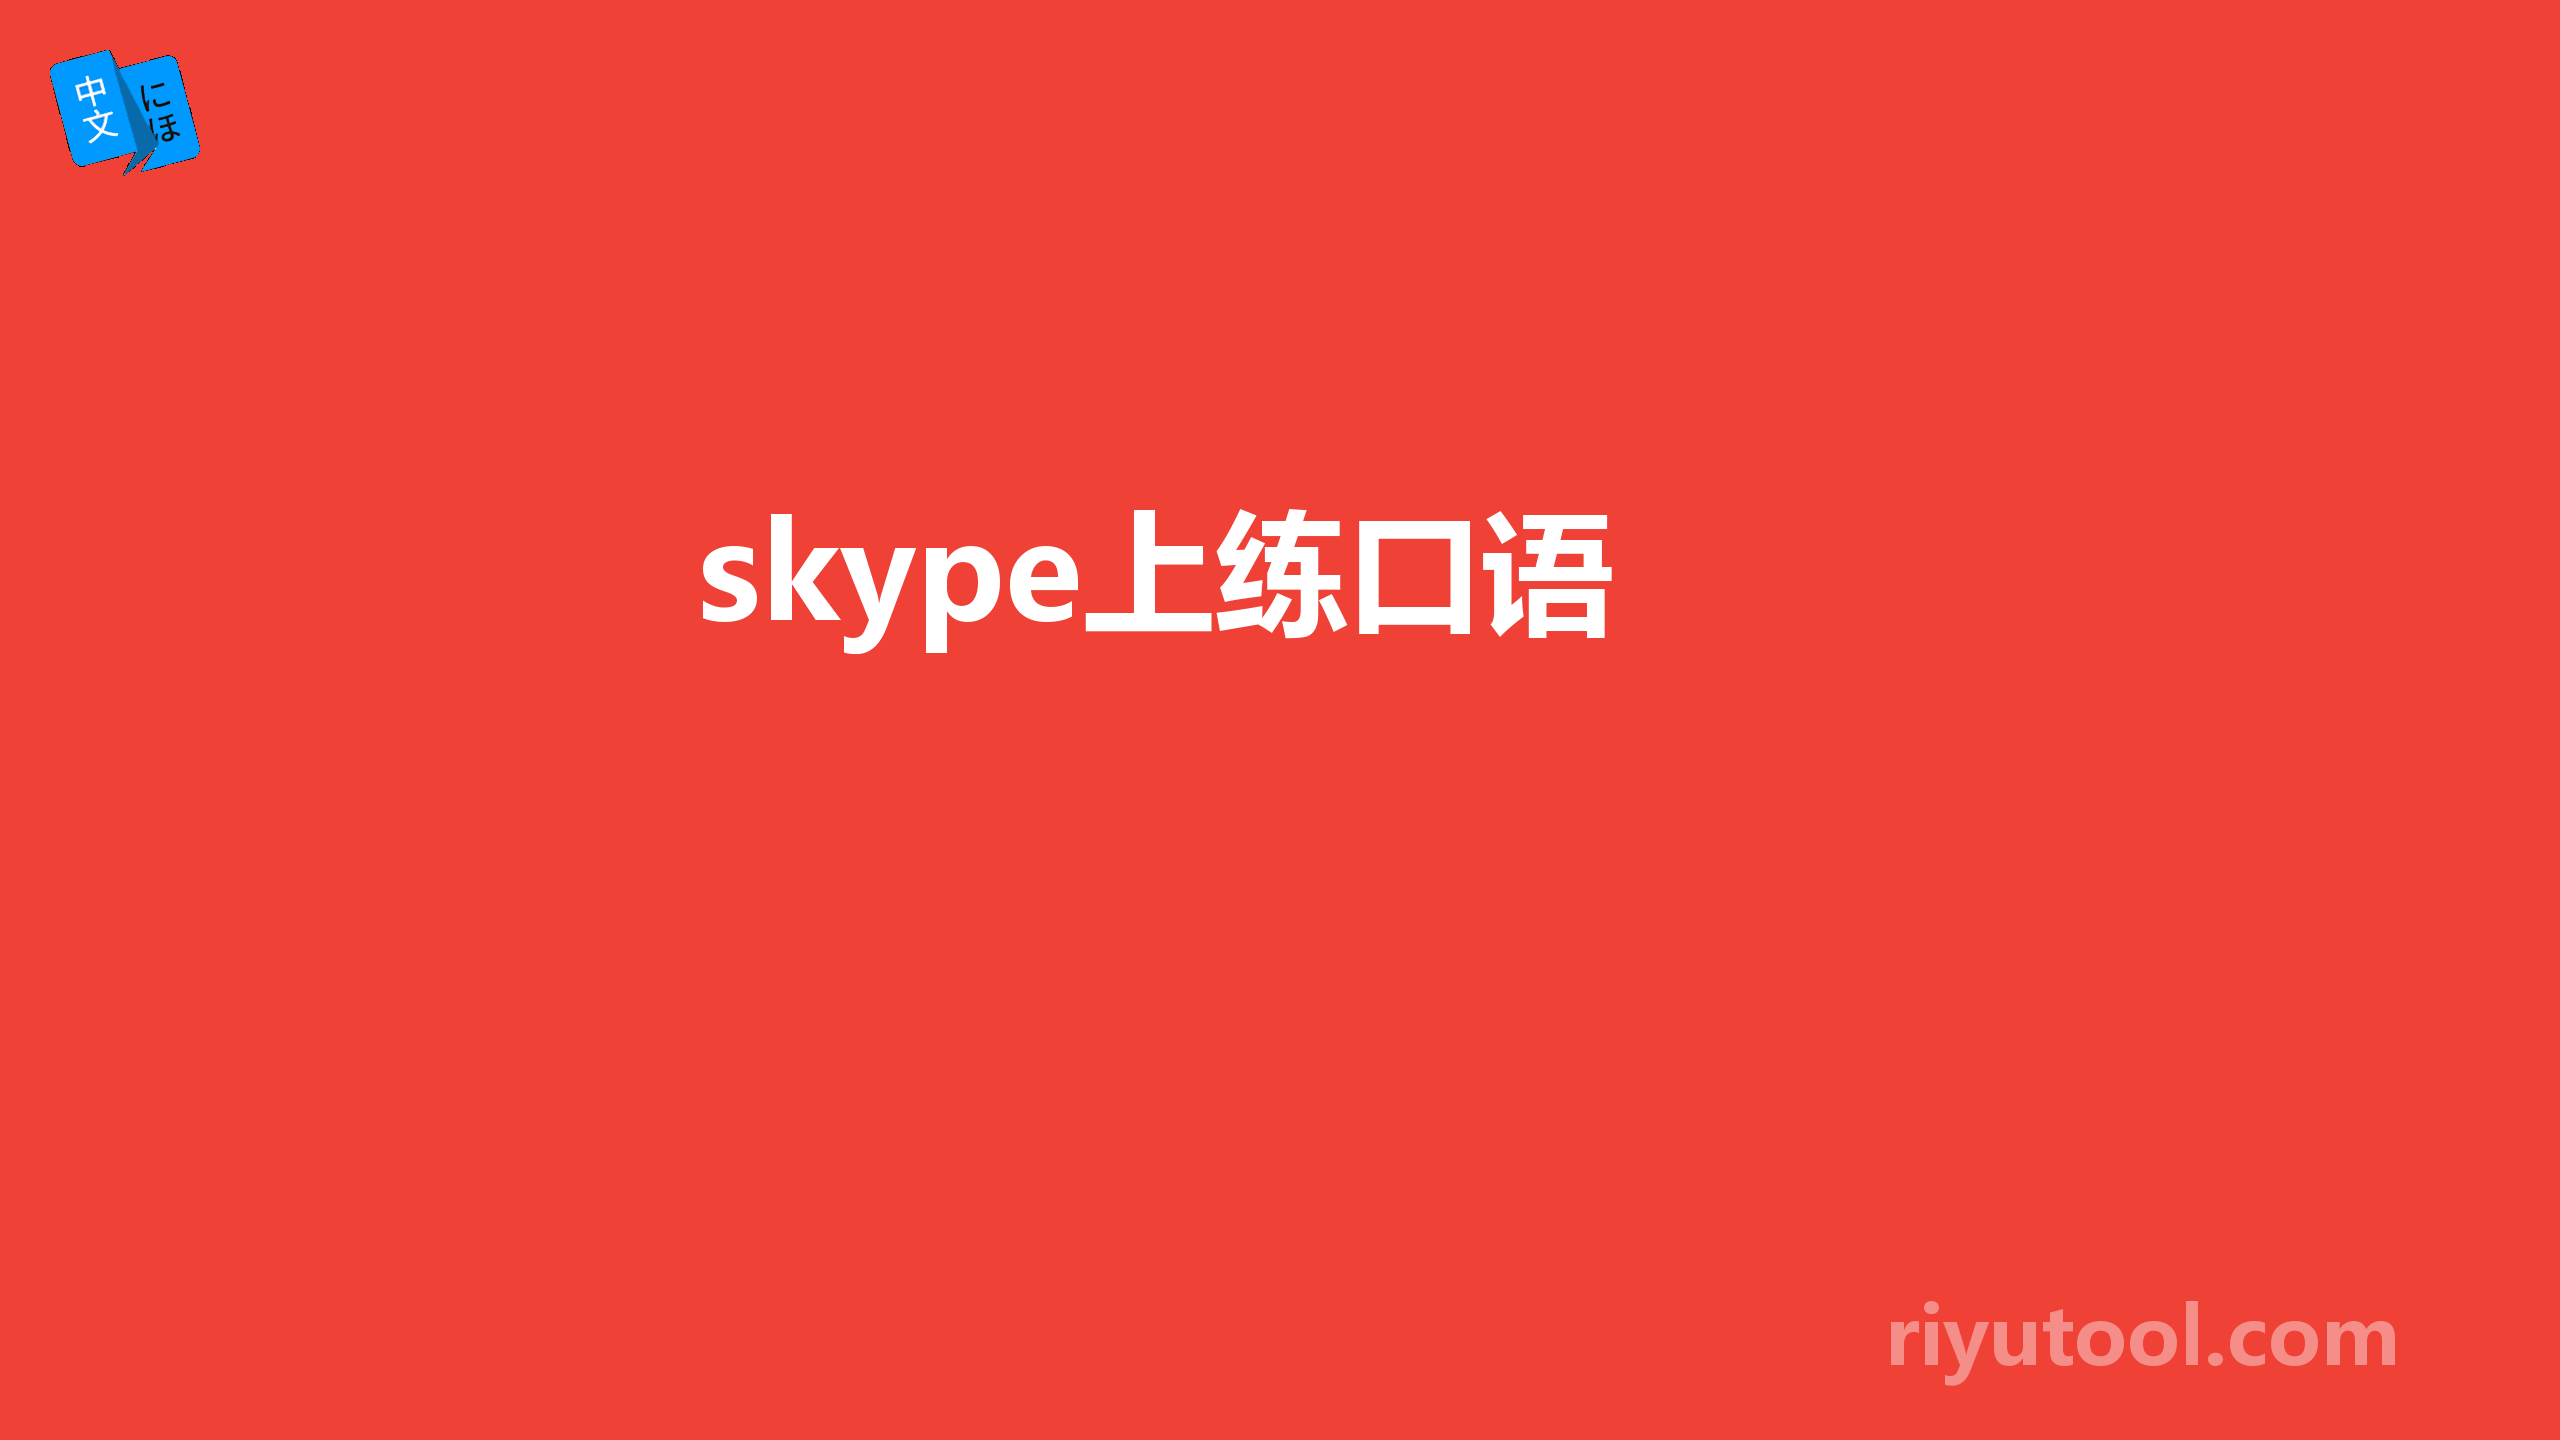  skype上练口语 